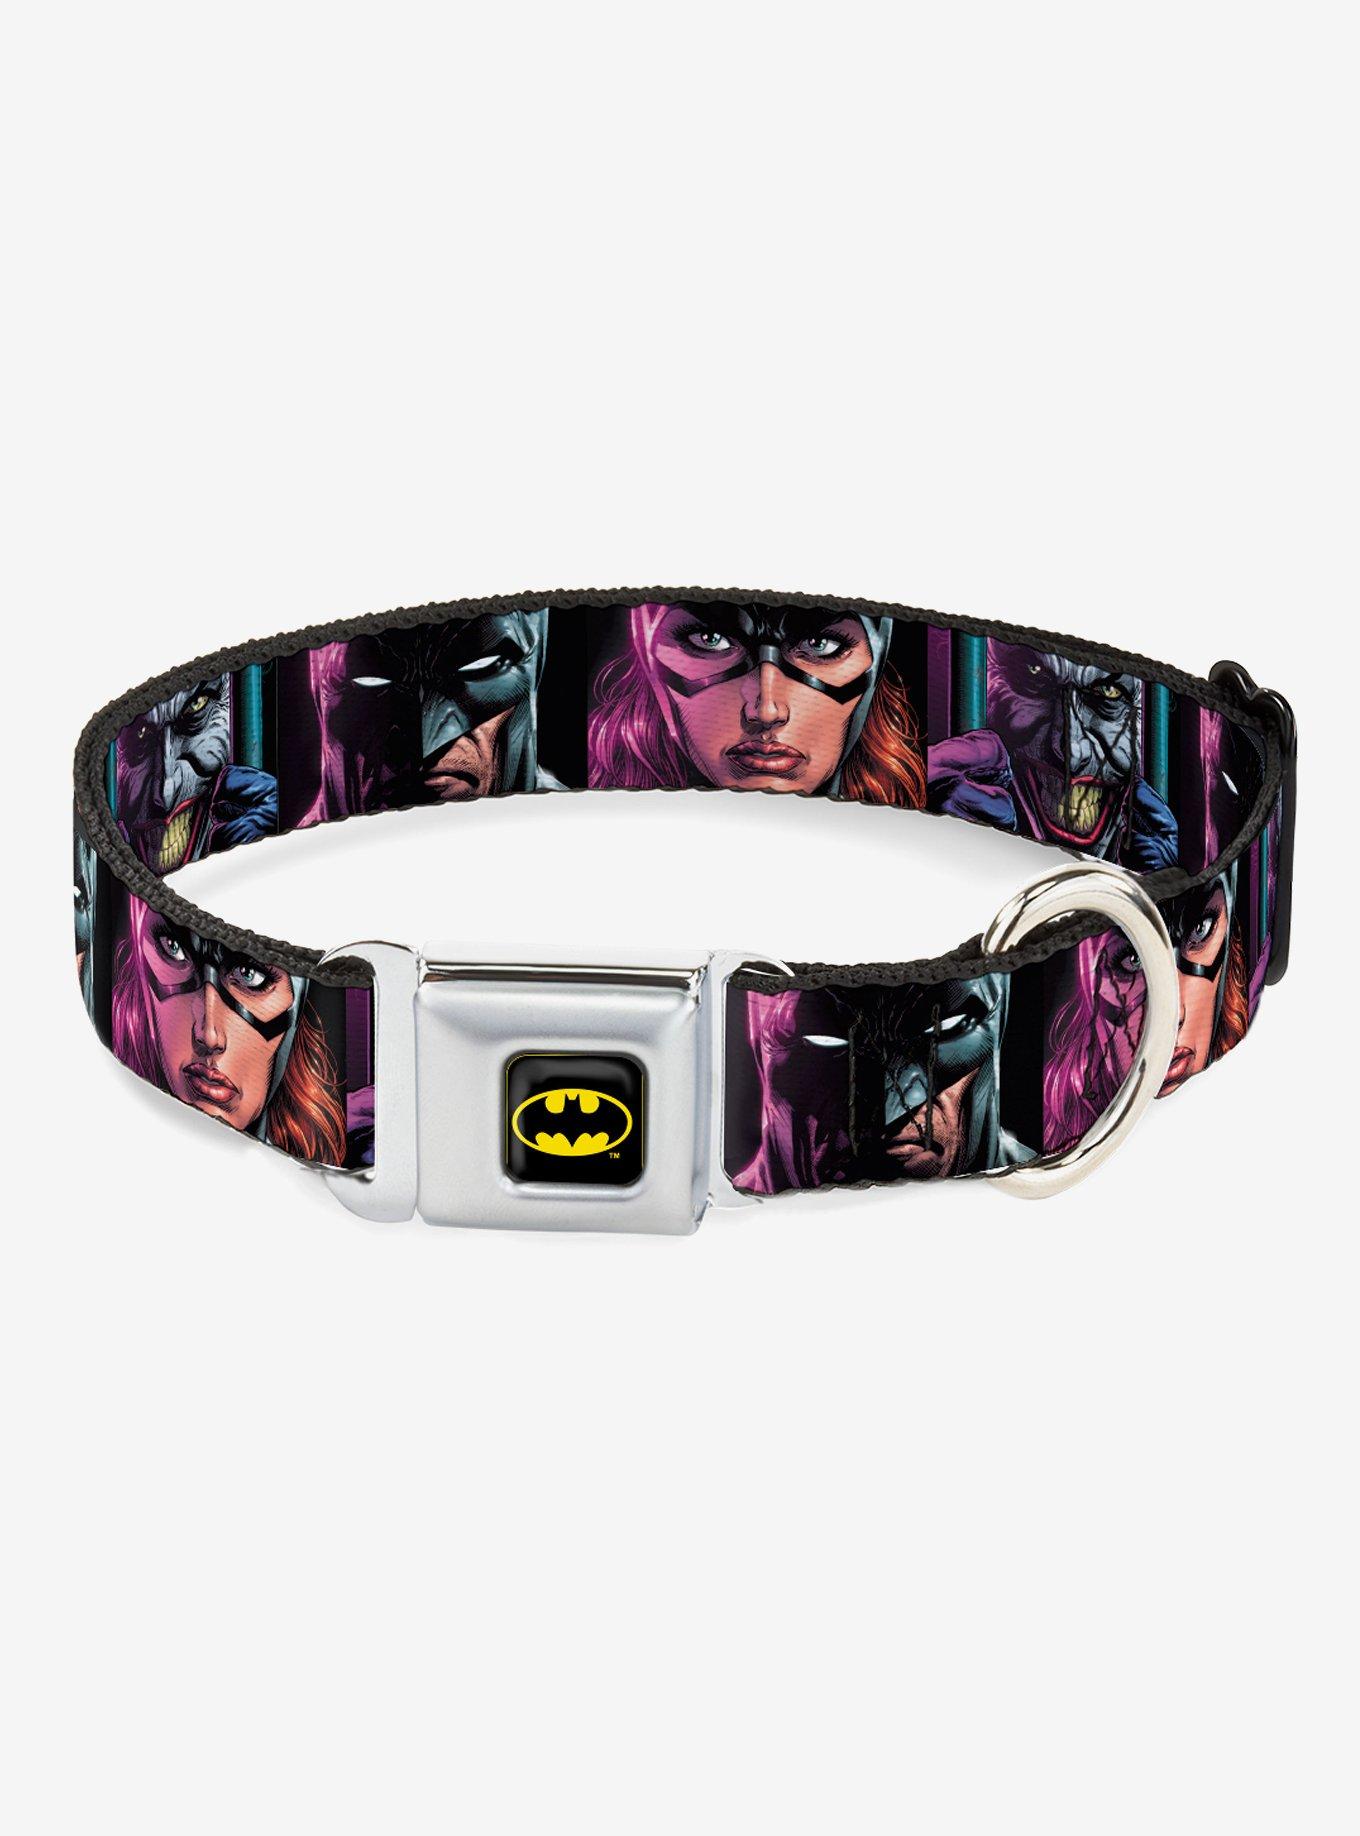 DC Comics Batman Batgirl Joker Comic Book Cover Seatbelt Buckle Dog Collar, BLACK, hi-res